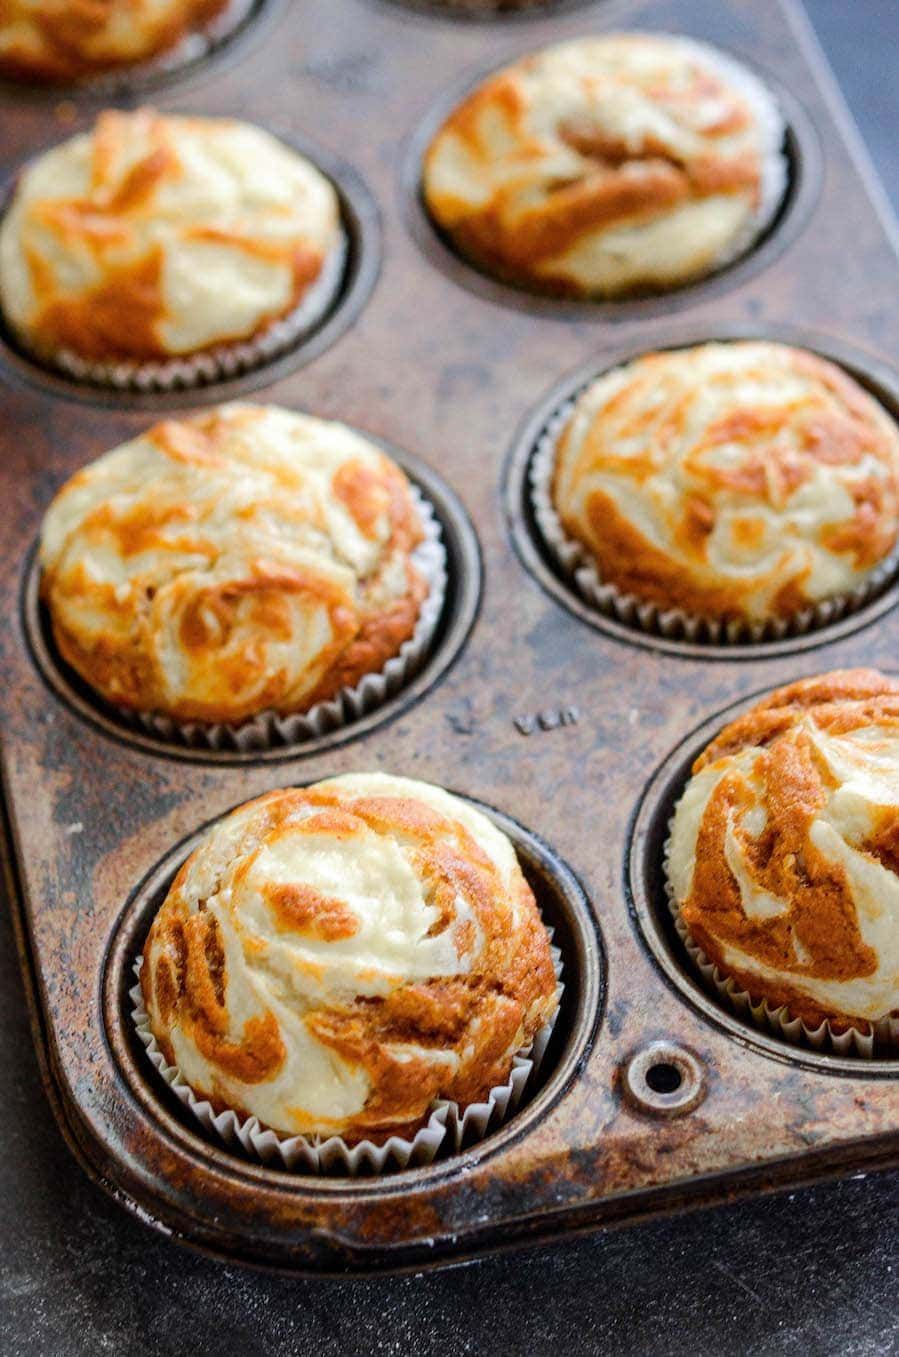 PUMPKIN CREAM CHEESE SWIRL MUFFINS #pumpkin #desserts #healthycake #recipes #muffins